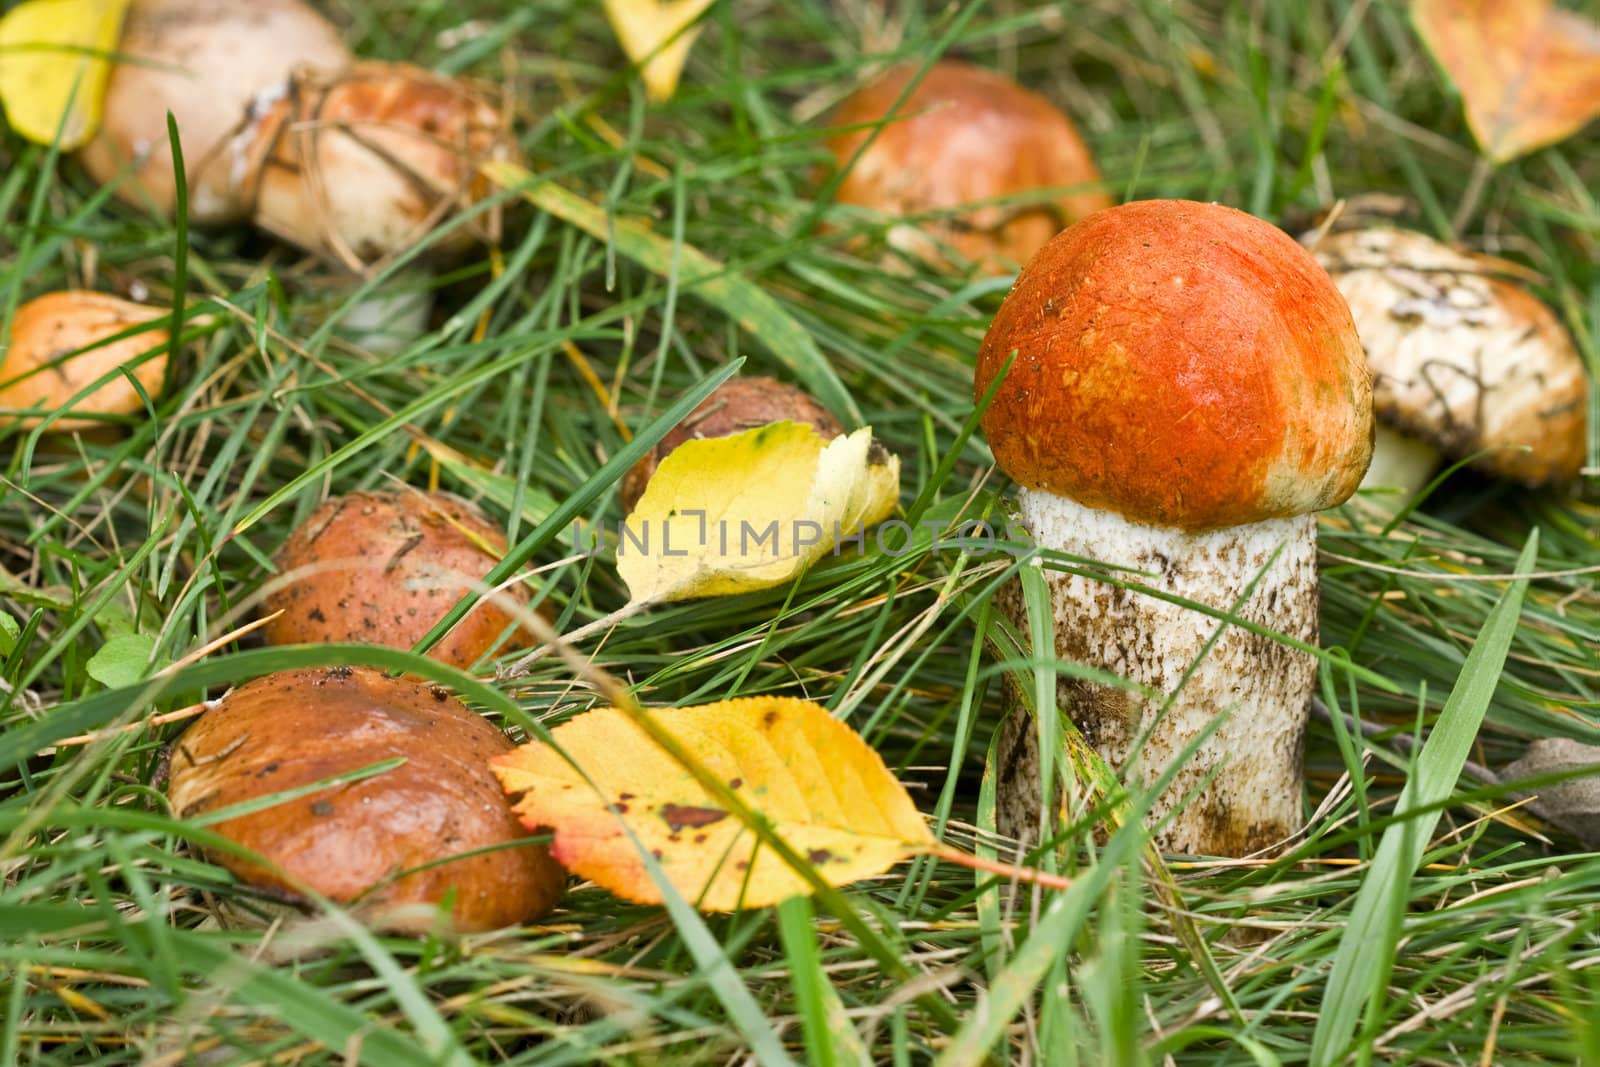 Aspen mushroom by rozhenyuk